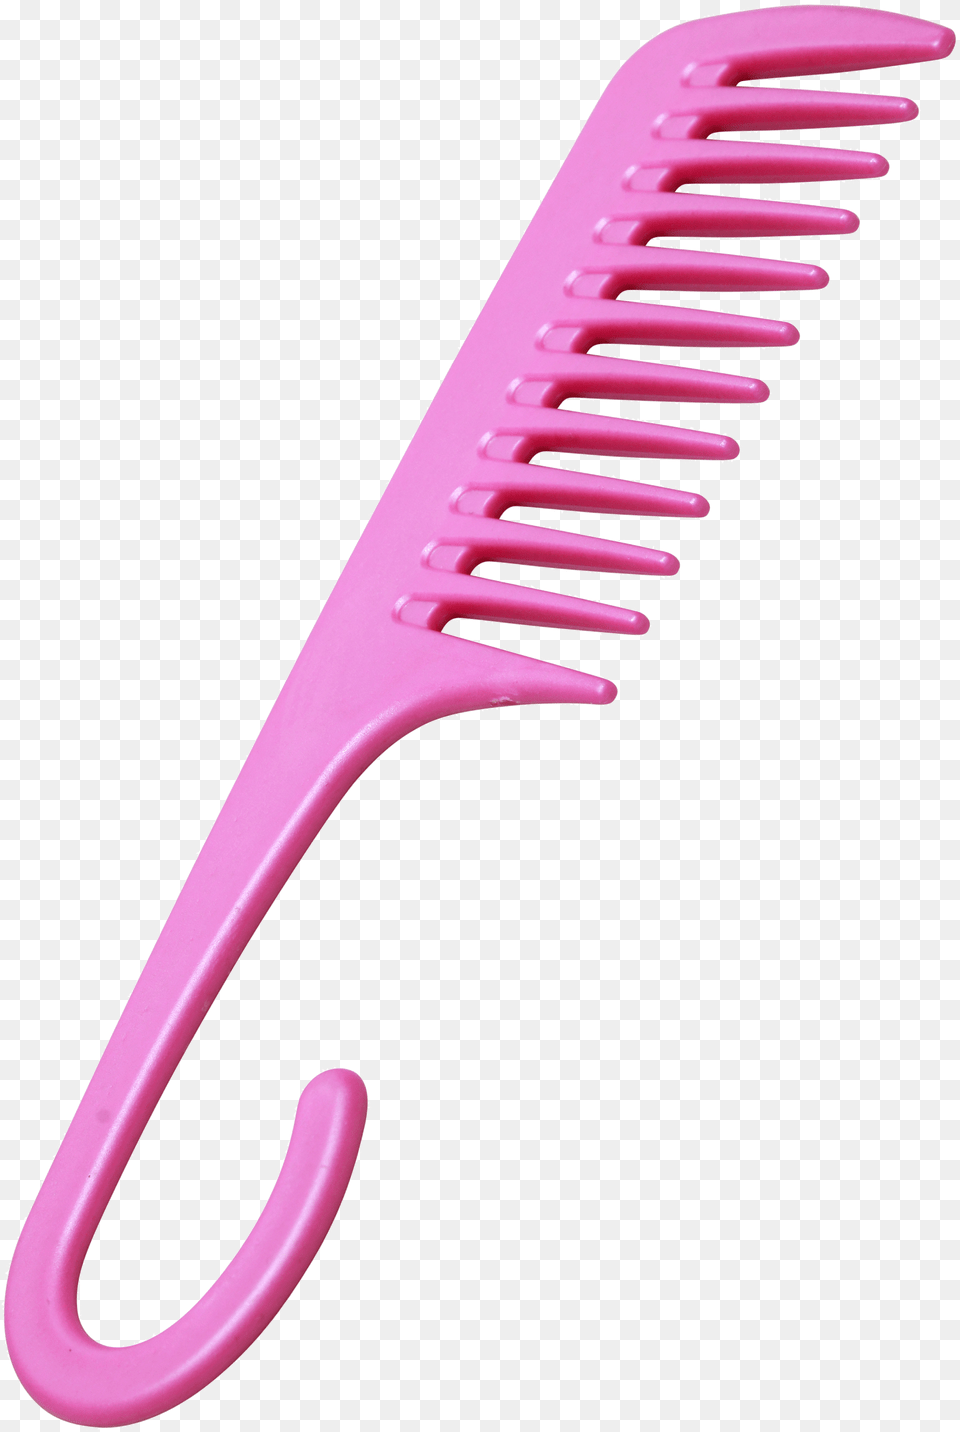 Detangler Shower Comb With Hook Shower Comb Free Transparent Png